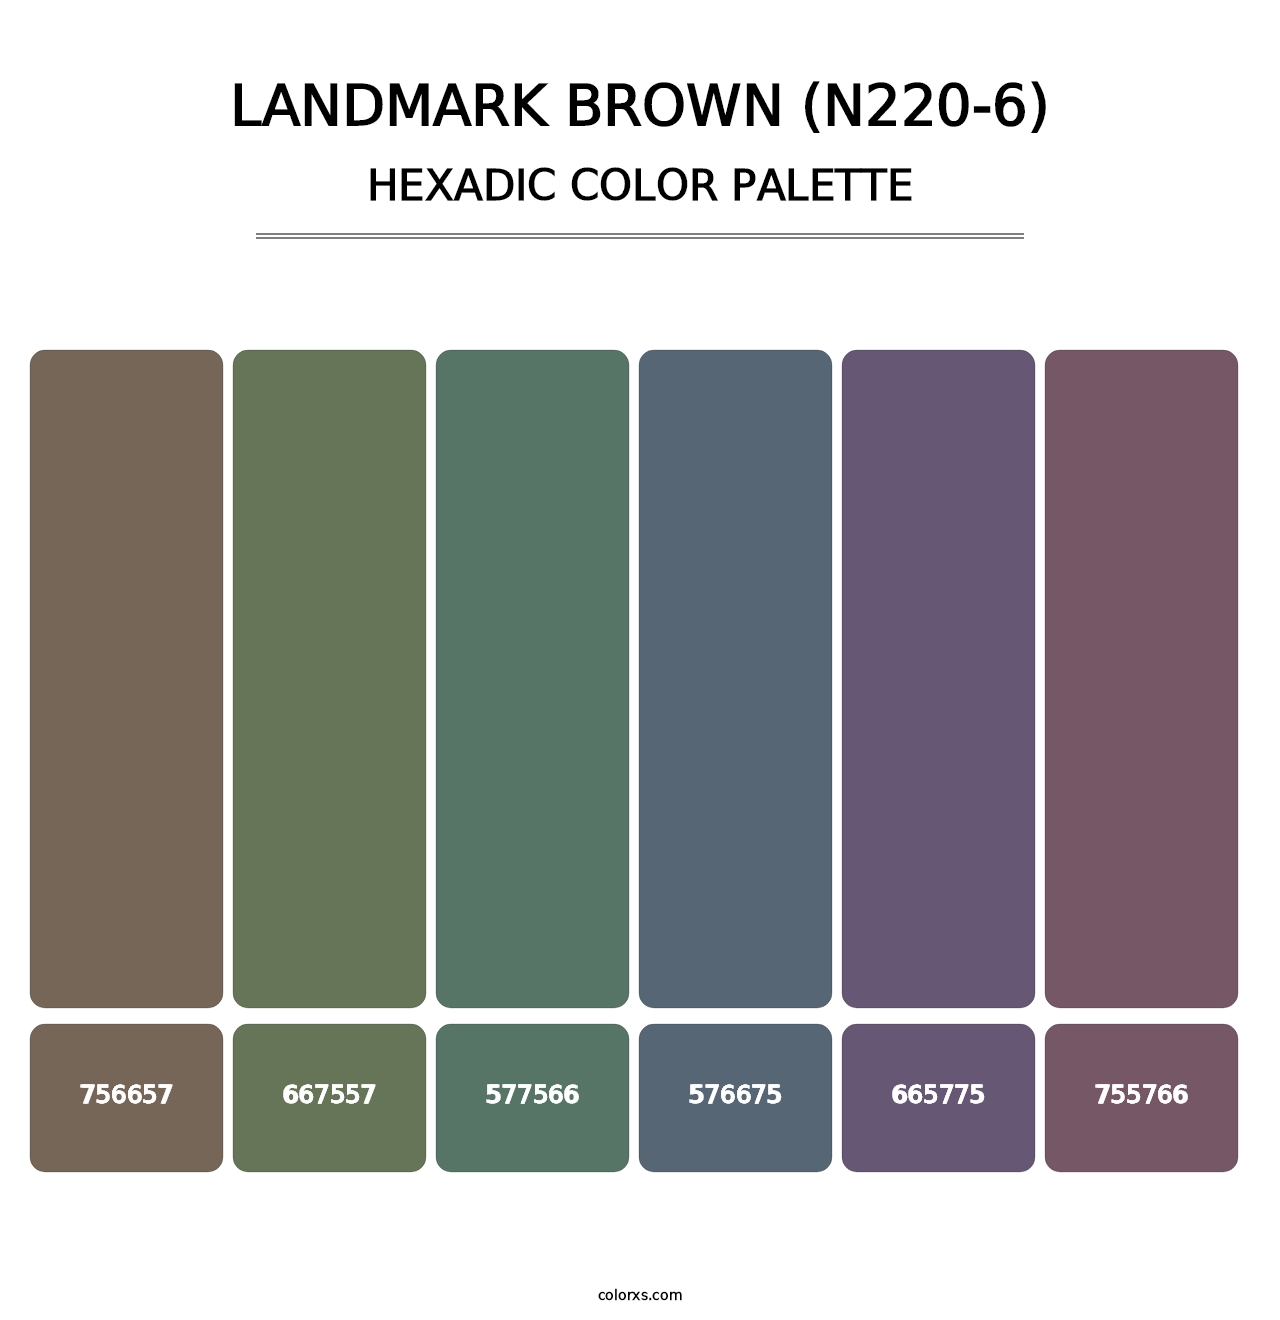 Landmark Brown (N220-6) - Hexadic Color Palette